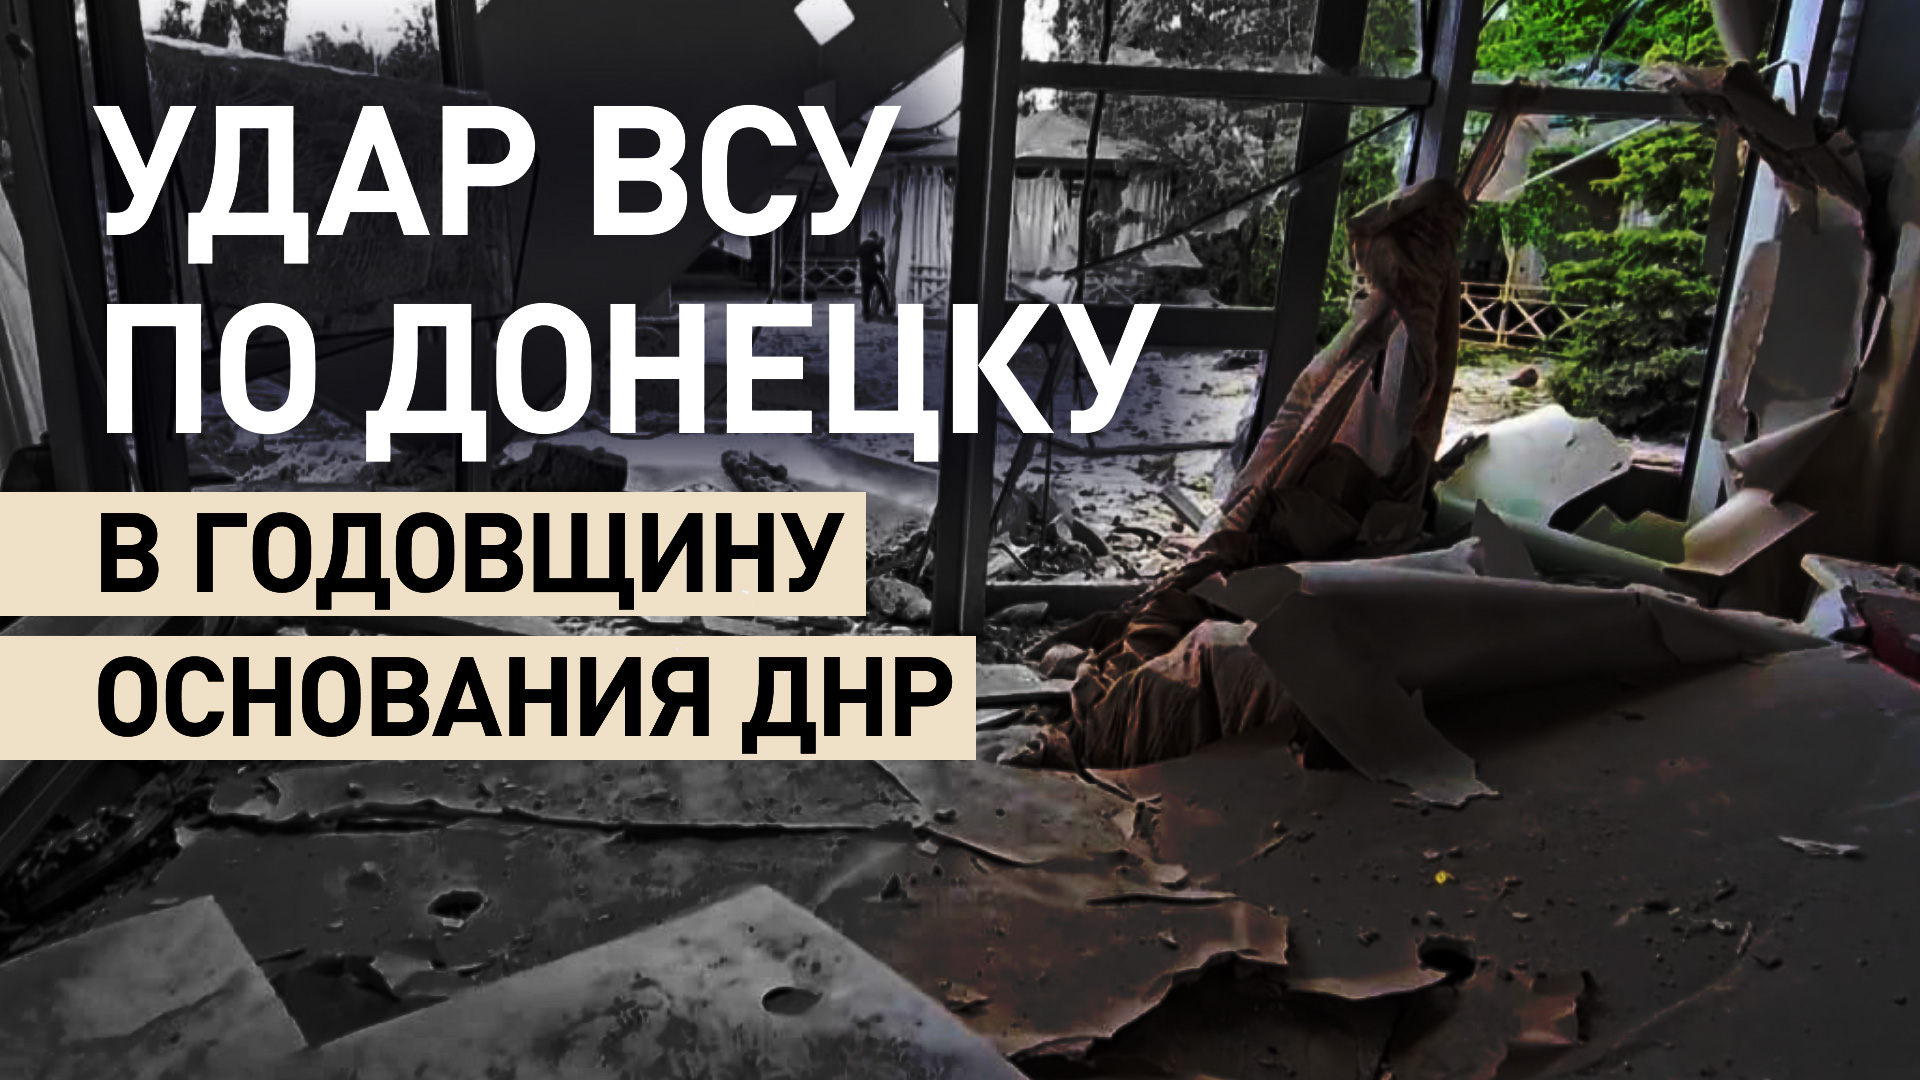 ВСУ нанесли удар по Донецку в годовщину основания ДНР